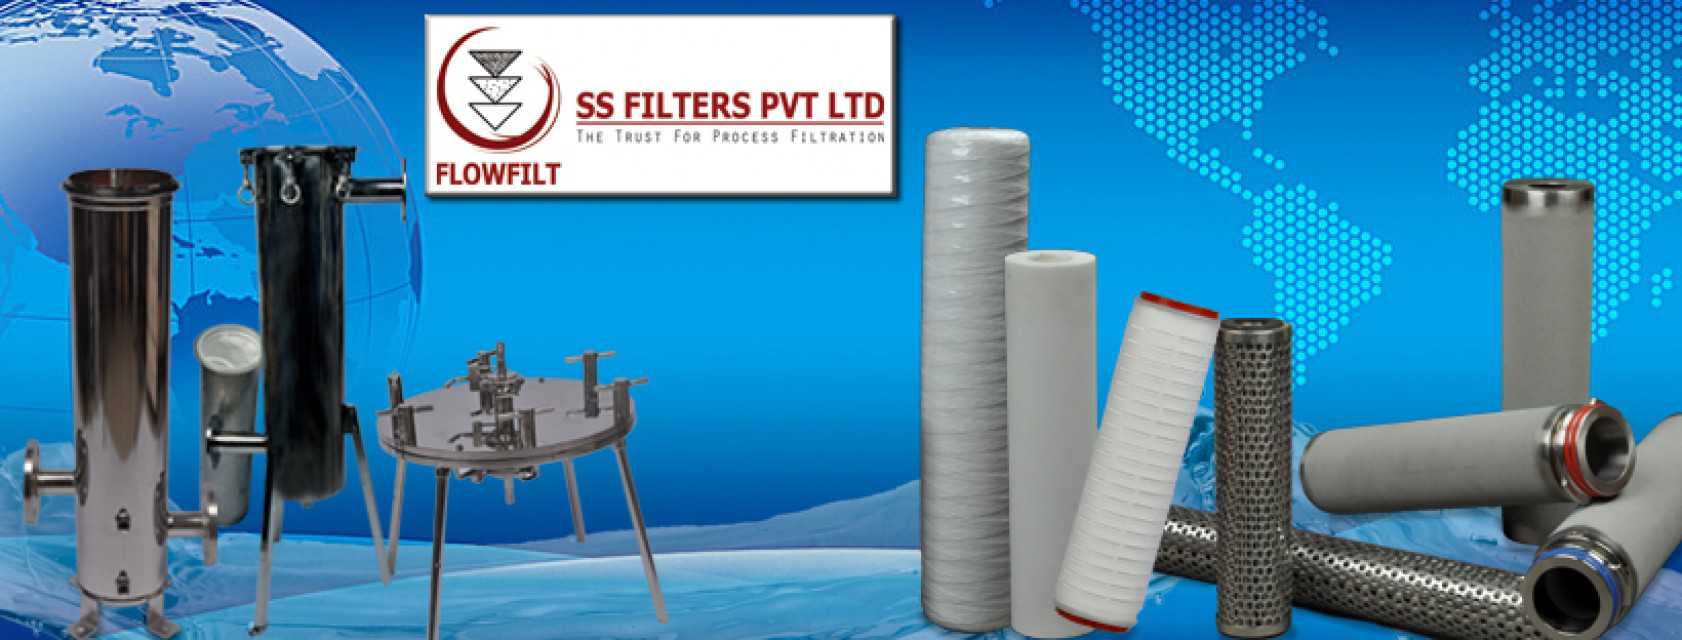 Ss Filters Pvt Ltd